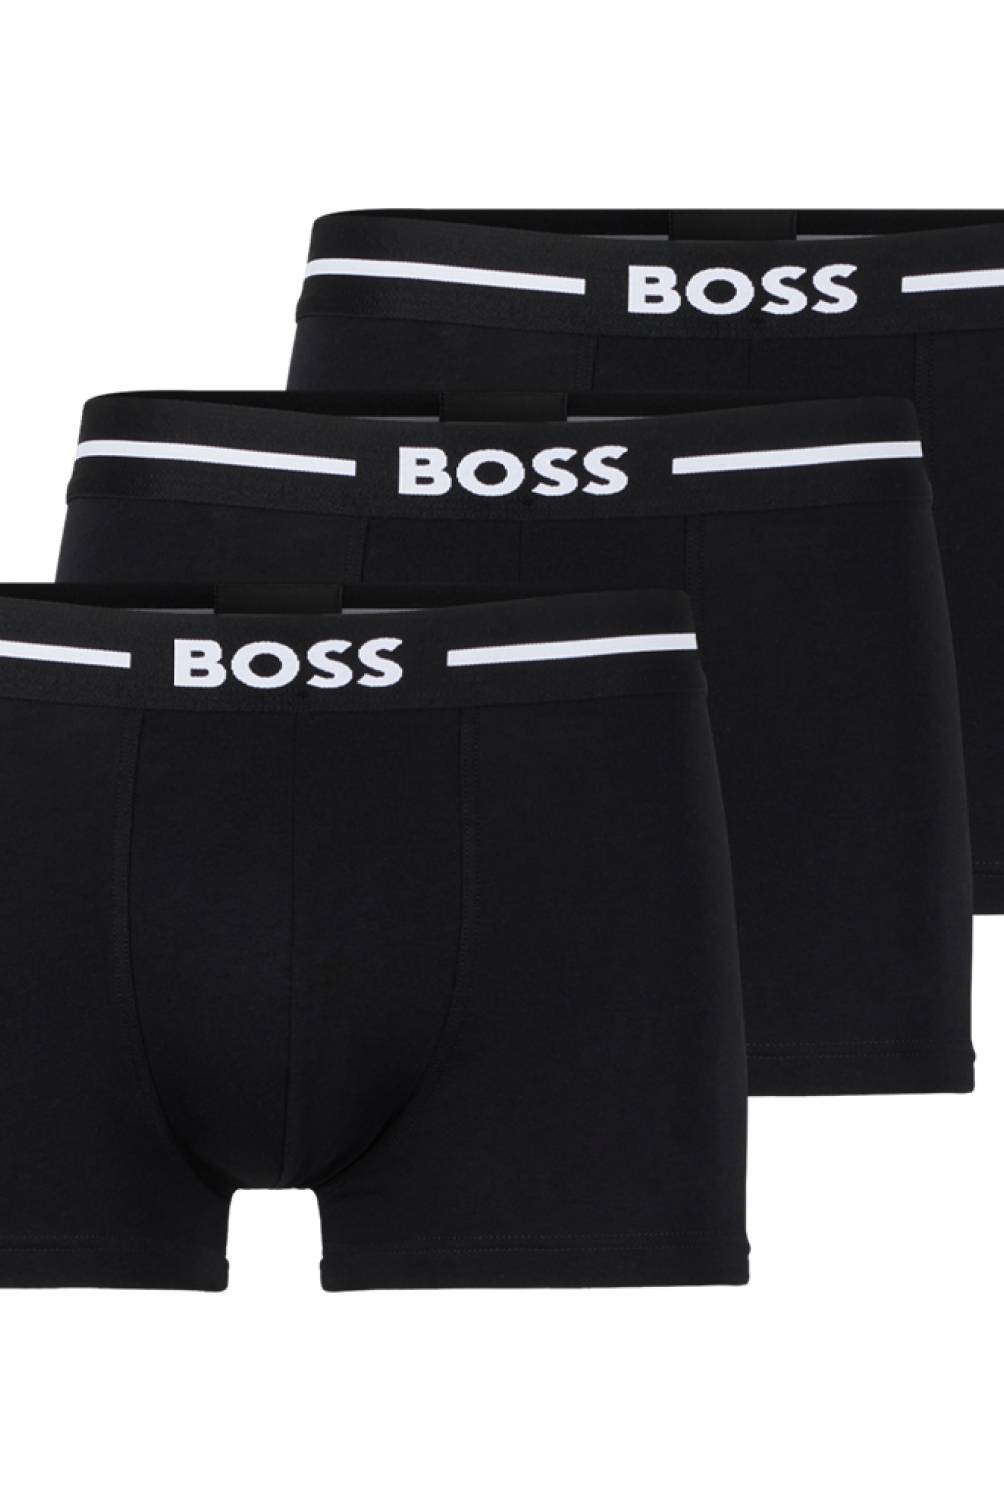 HUGO BOSS - Pack De 3 Boxers Algodón Hombre Hugo Boss